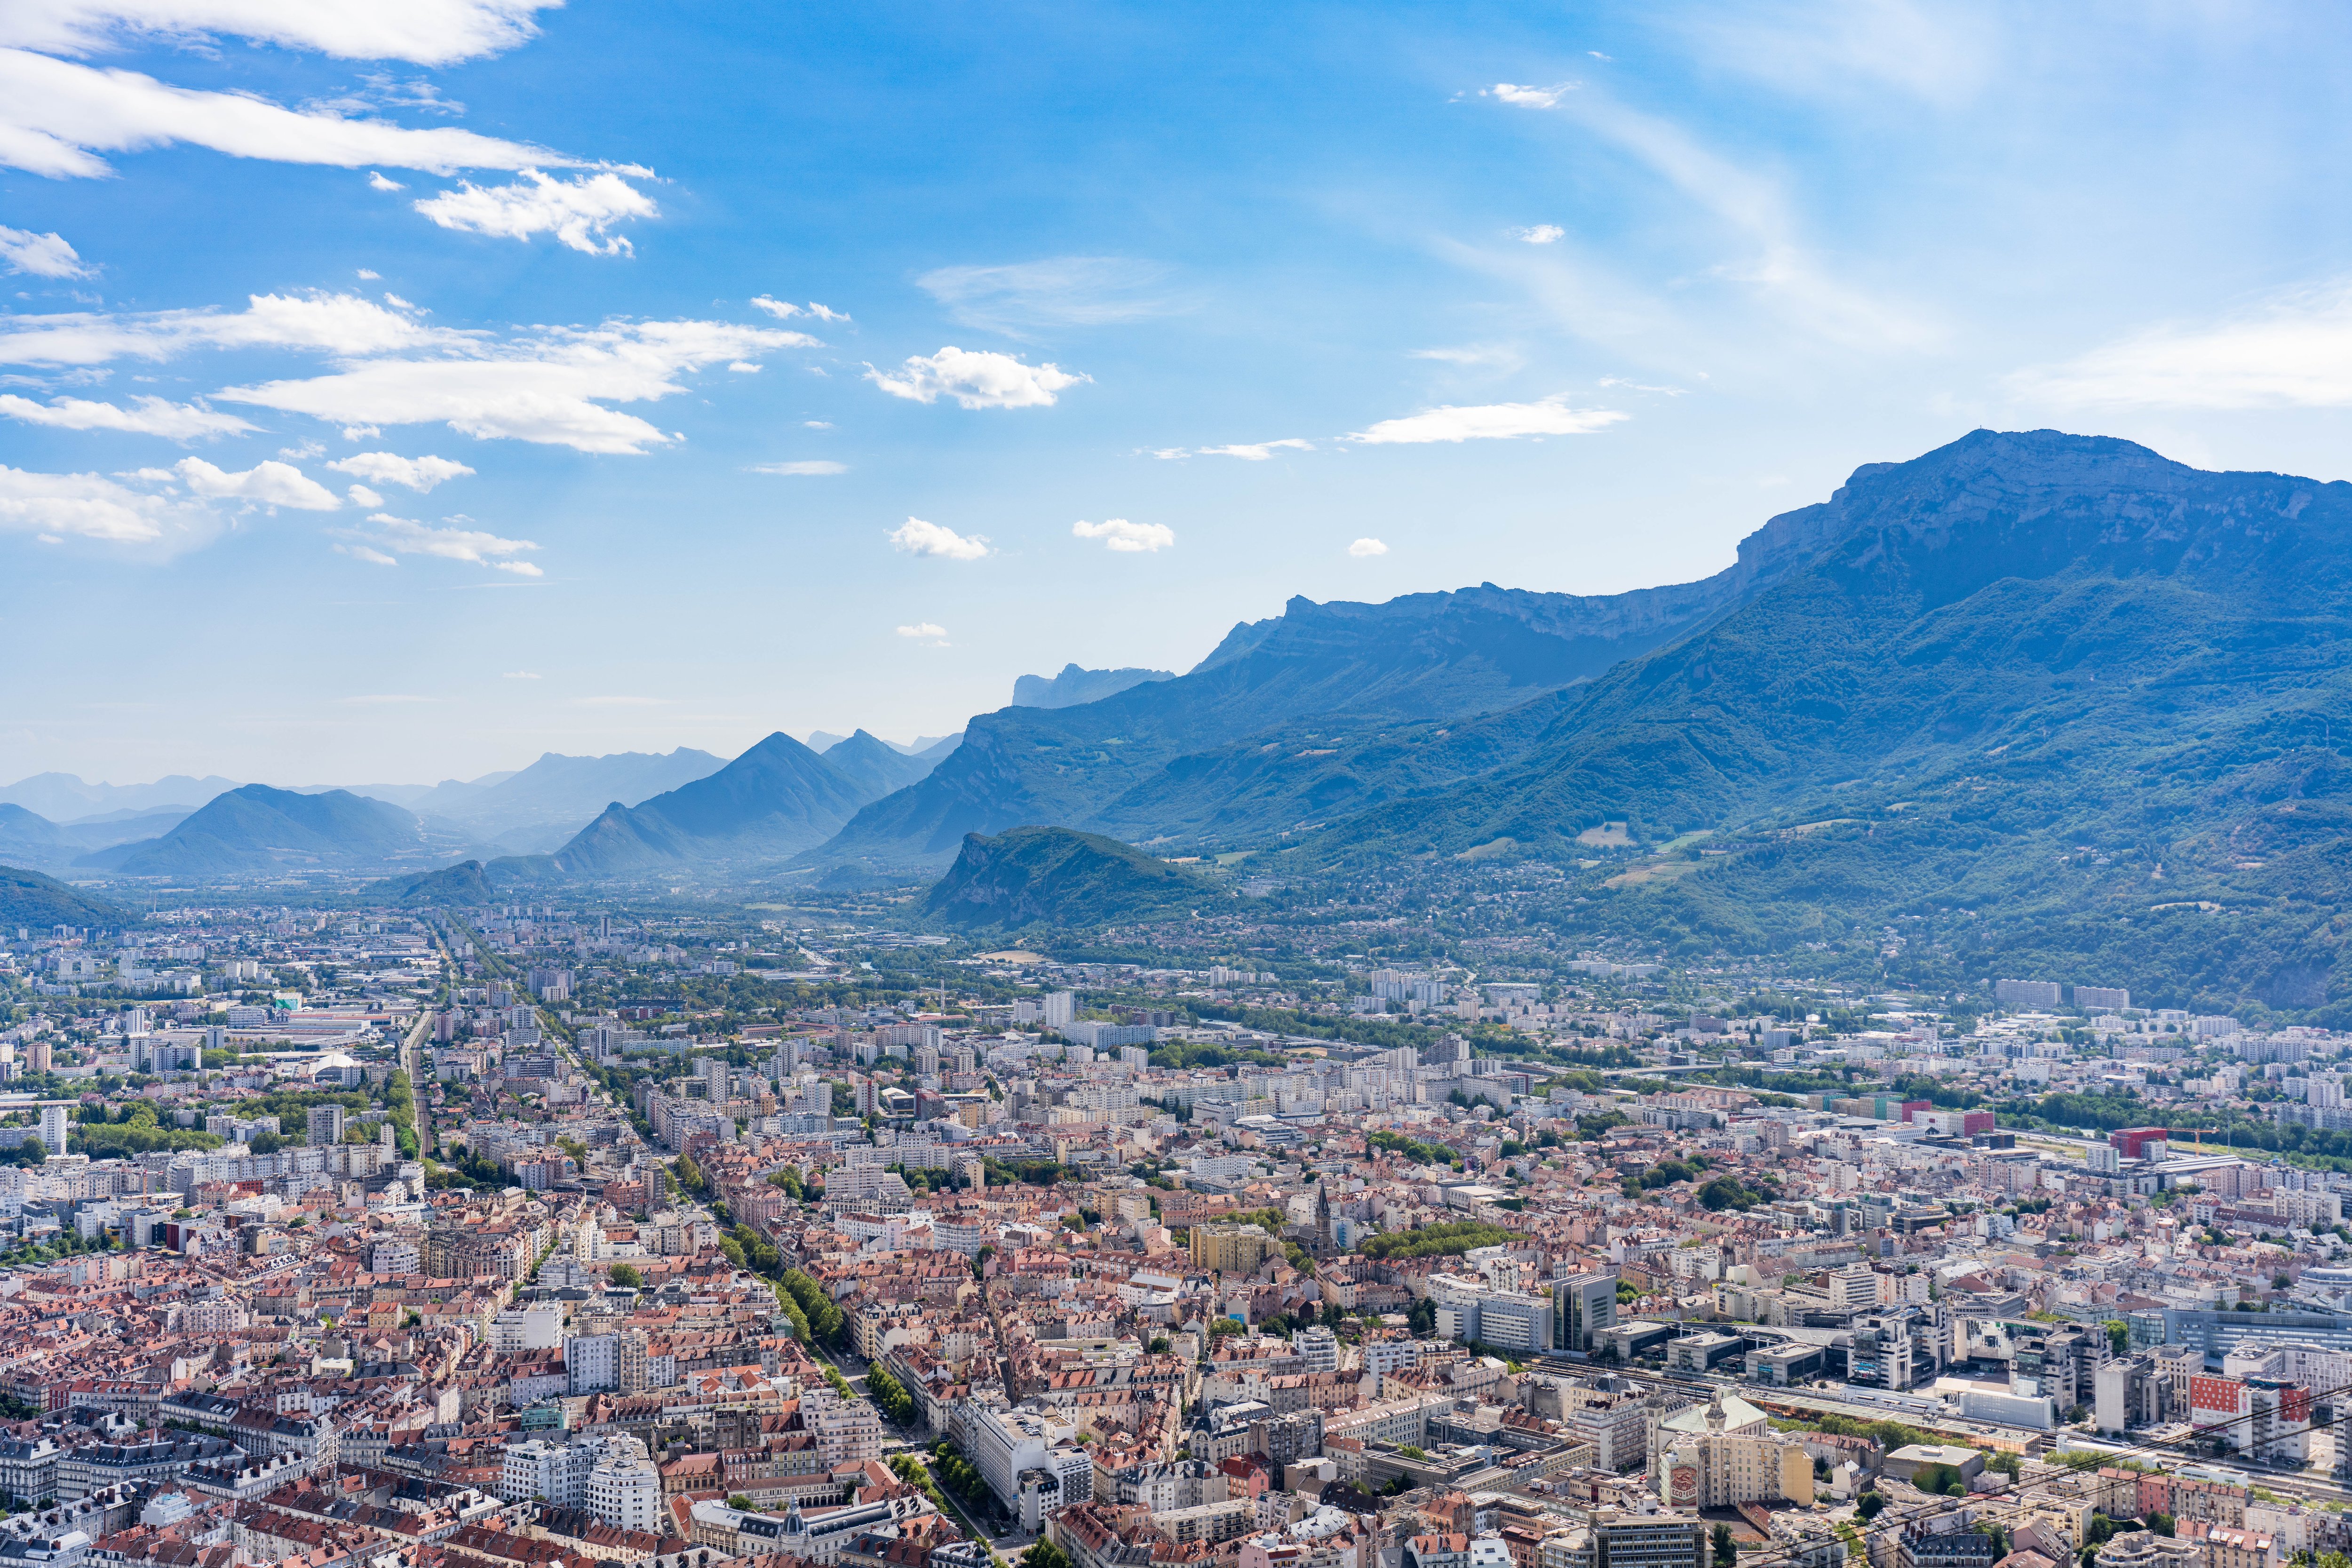 La ville de Grenoble doit en partie son attractivité à la proximité des montagnes (ici le Vercors en arrière-plan). LP/Thomas Pueyo